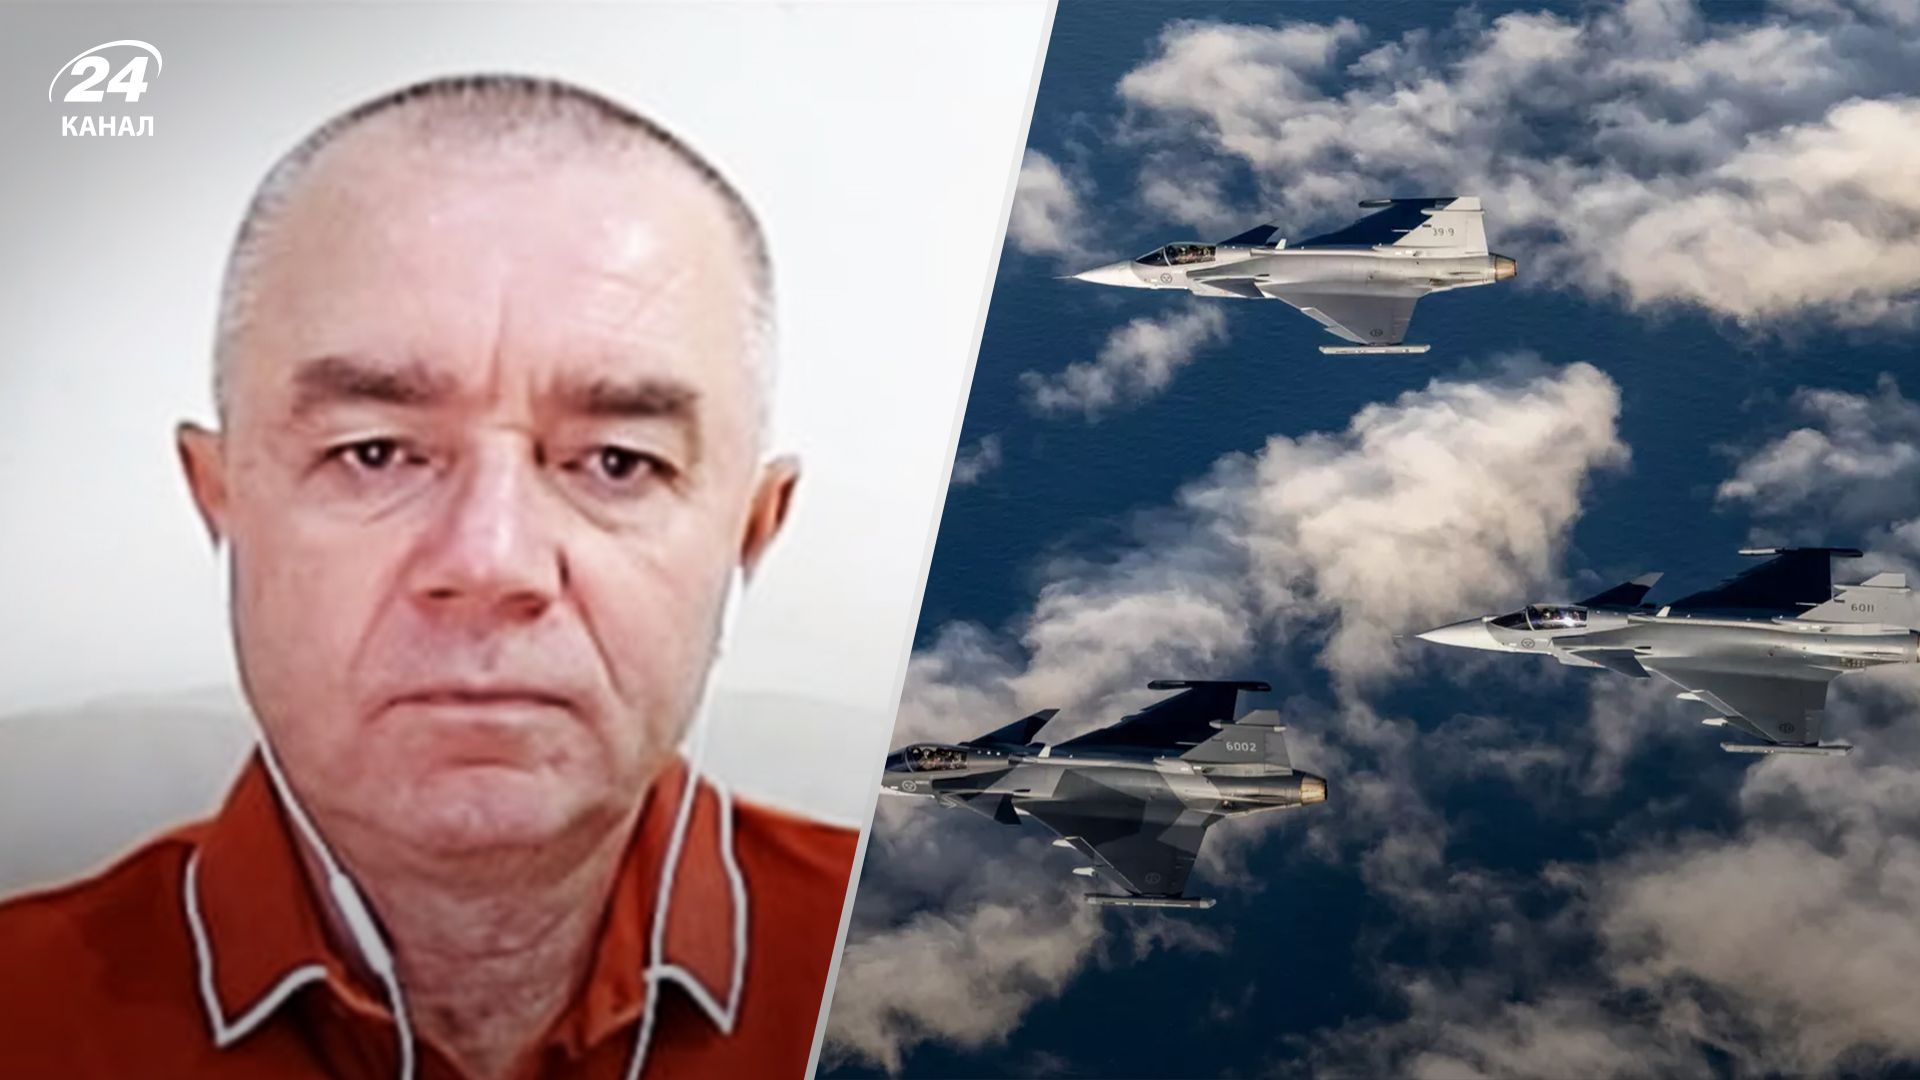 Самолеты Gripen для Украины - особенности истребителей и почему нам нужны - 24 Канал